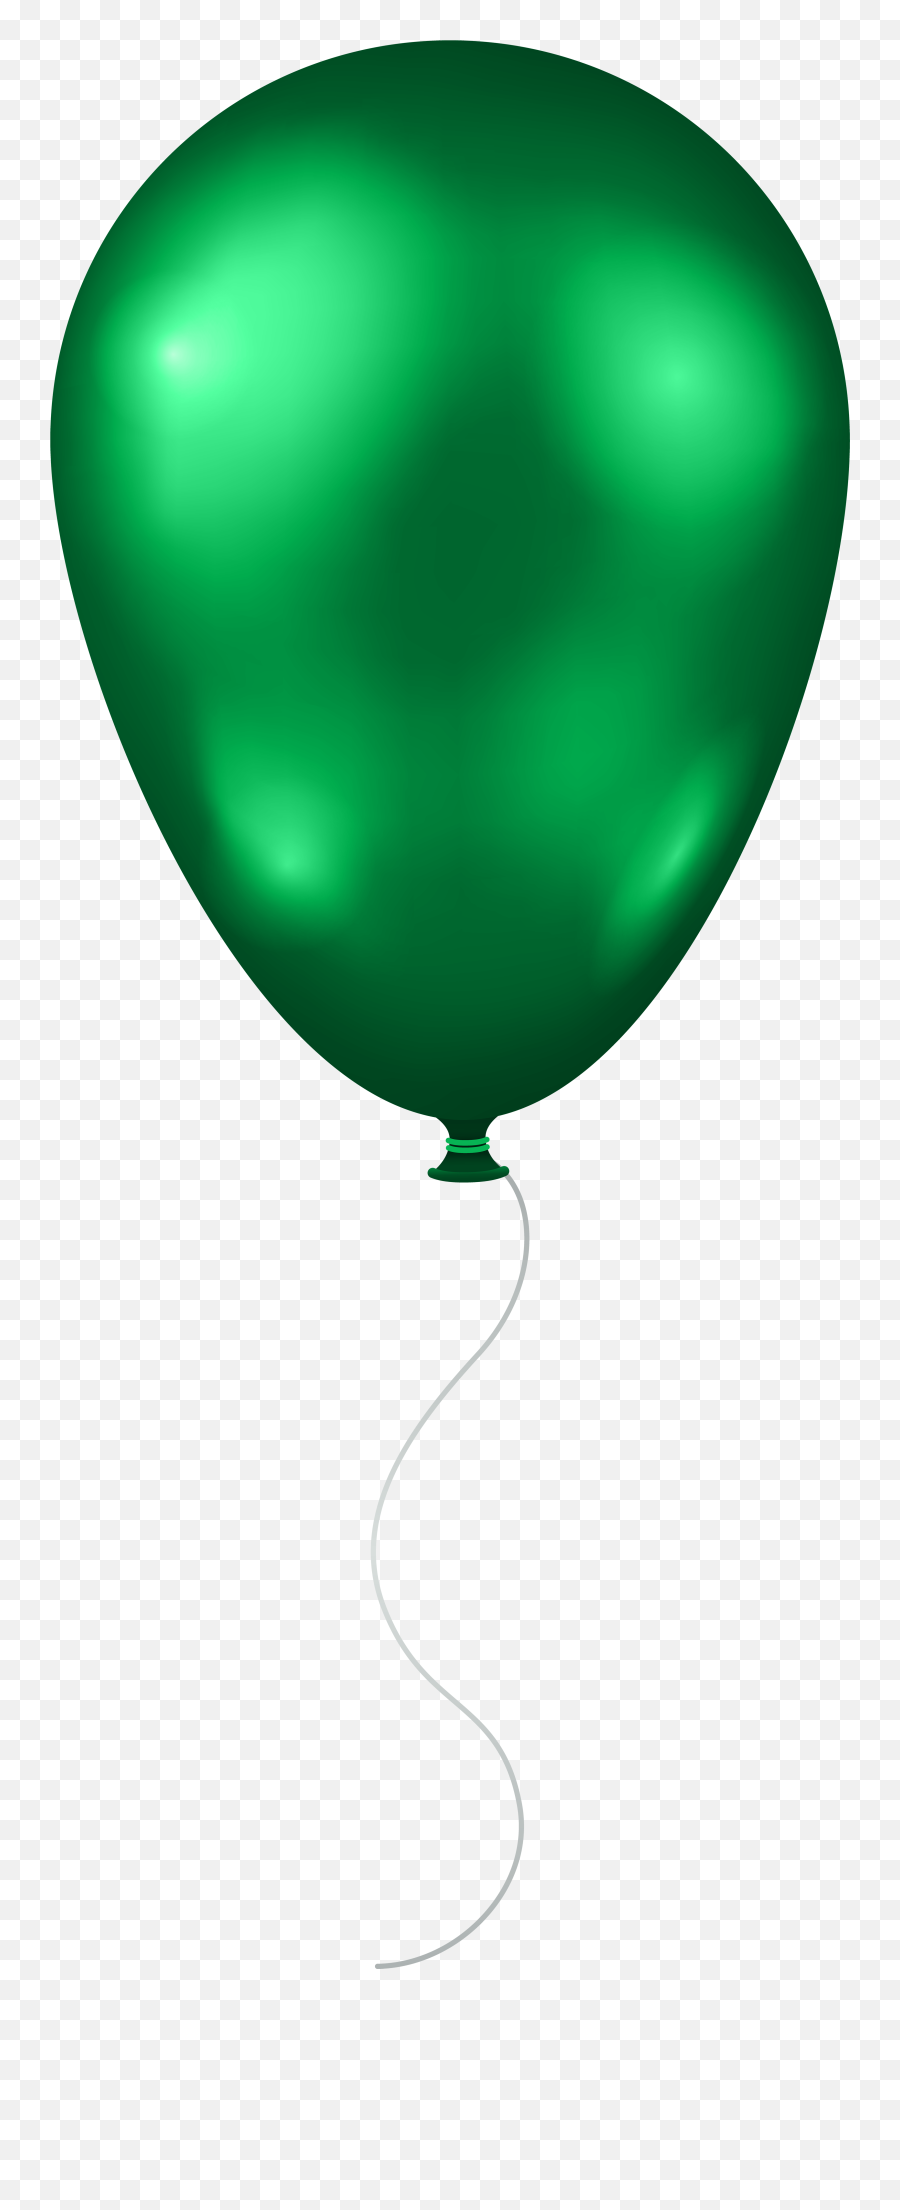 Green Balloon Transparent Png Clip Art - Transparent Background Green Balloon Clipart Emoji,Balloons Transparent Background